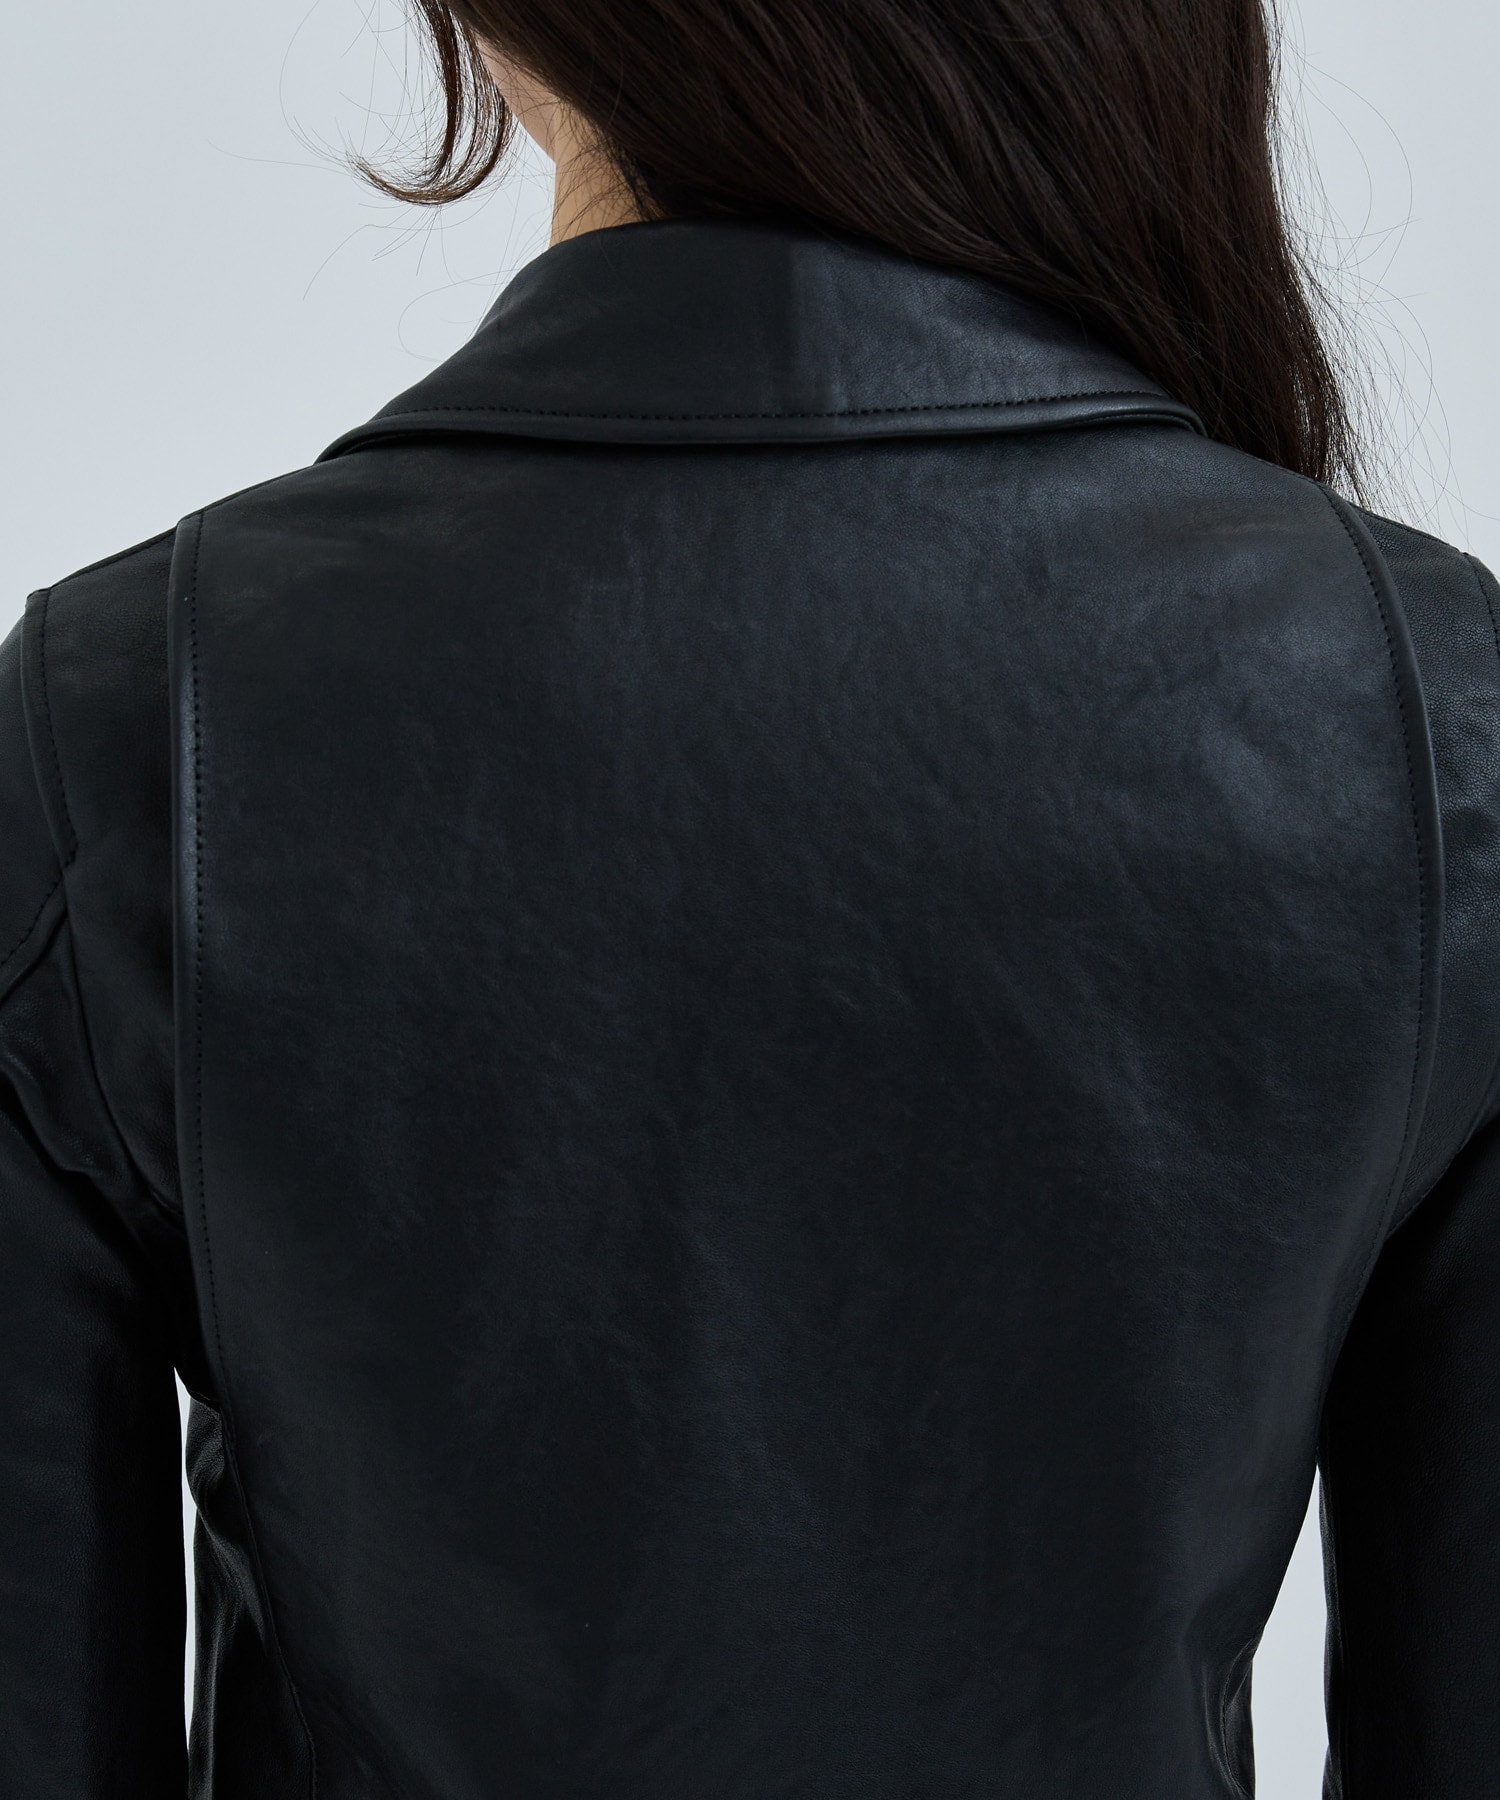 別注vintage leather riders jacket(XS BLACK): beautiful people 